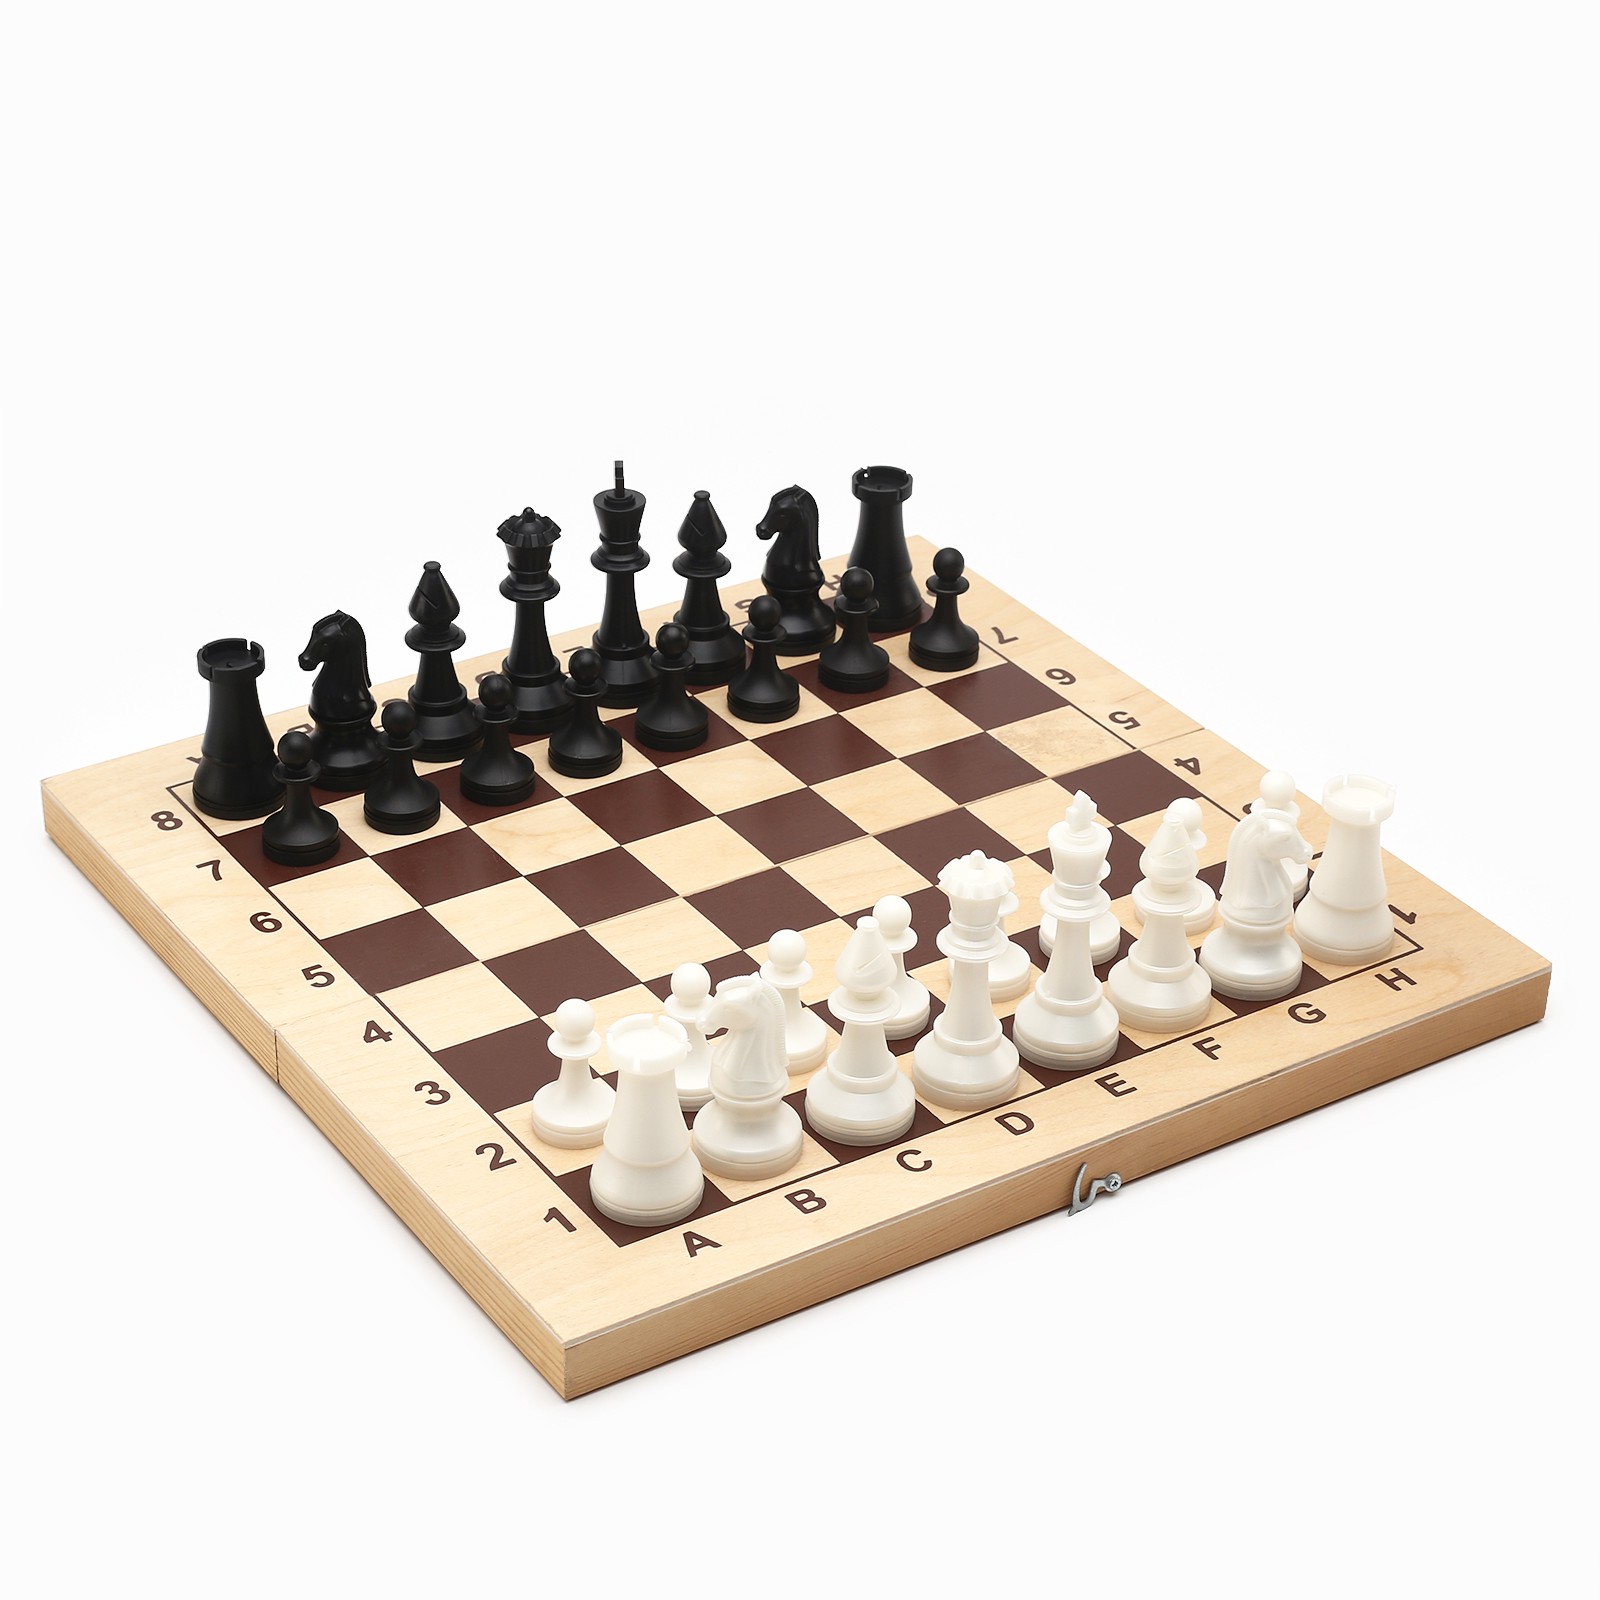 Шахматные фигуры Sima-Land турнирные пластик король h 10.5 см пешка h 5 см - фото 3